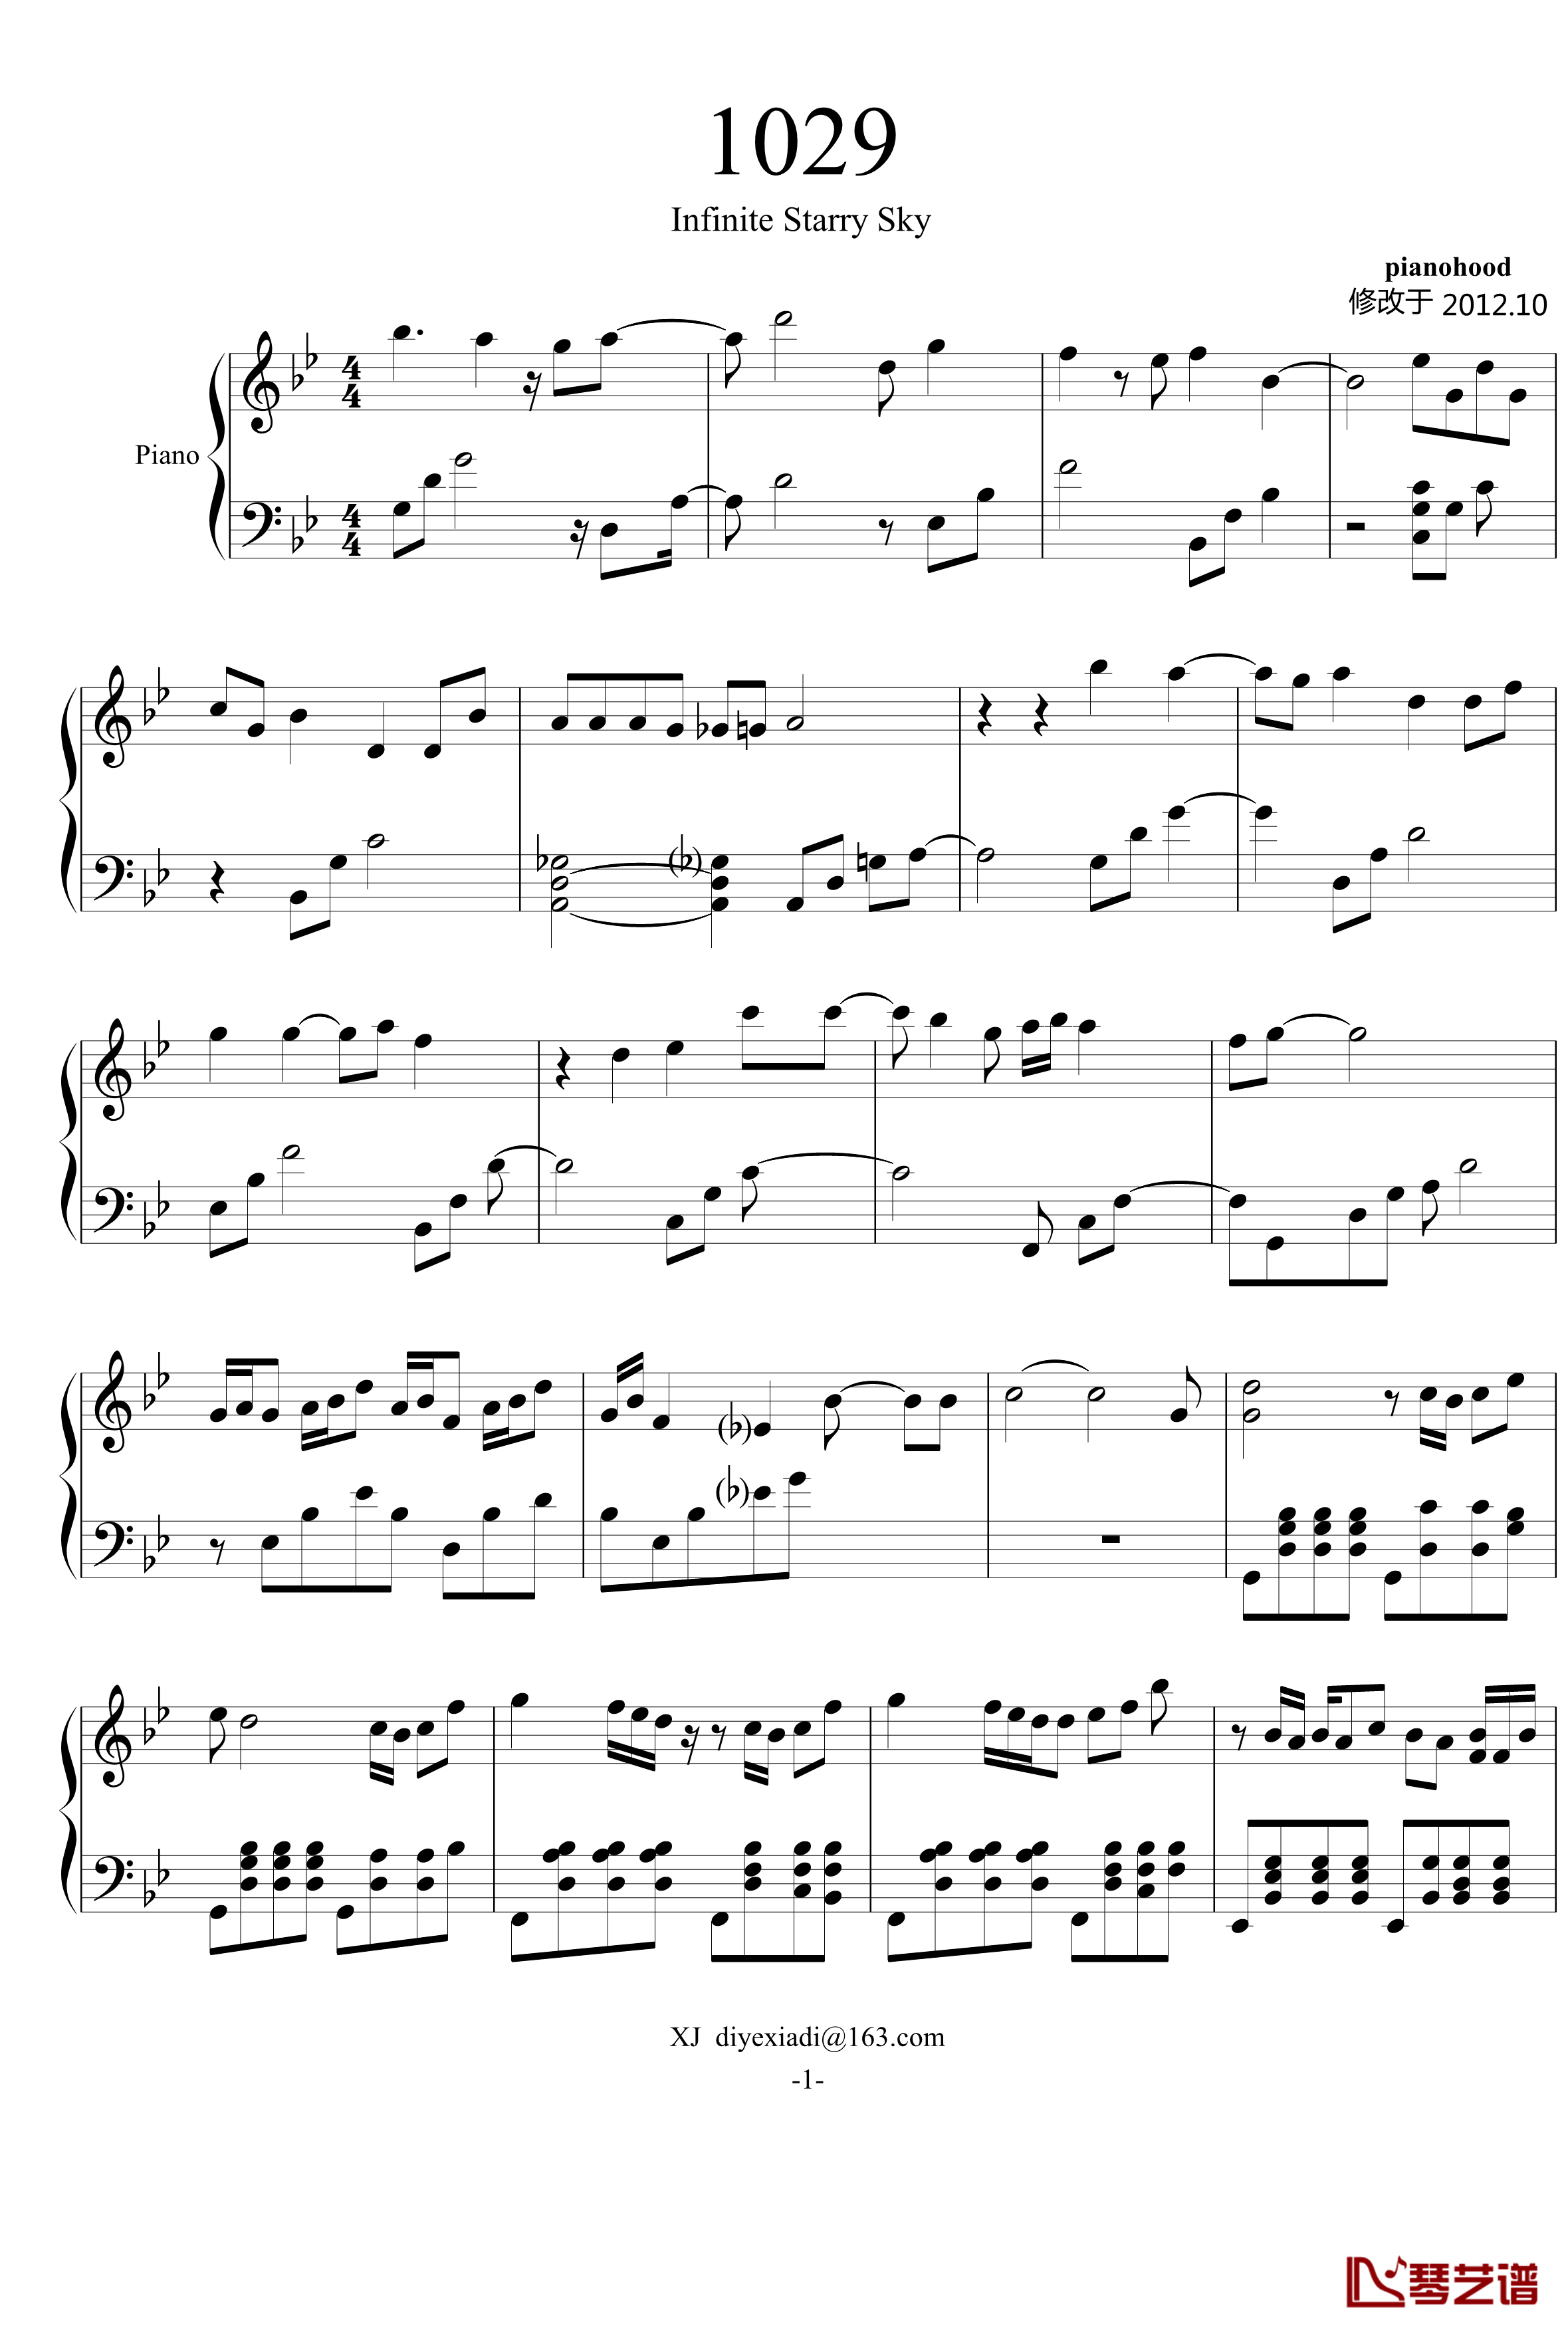 1029钢琴谱-pianohood1